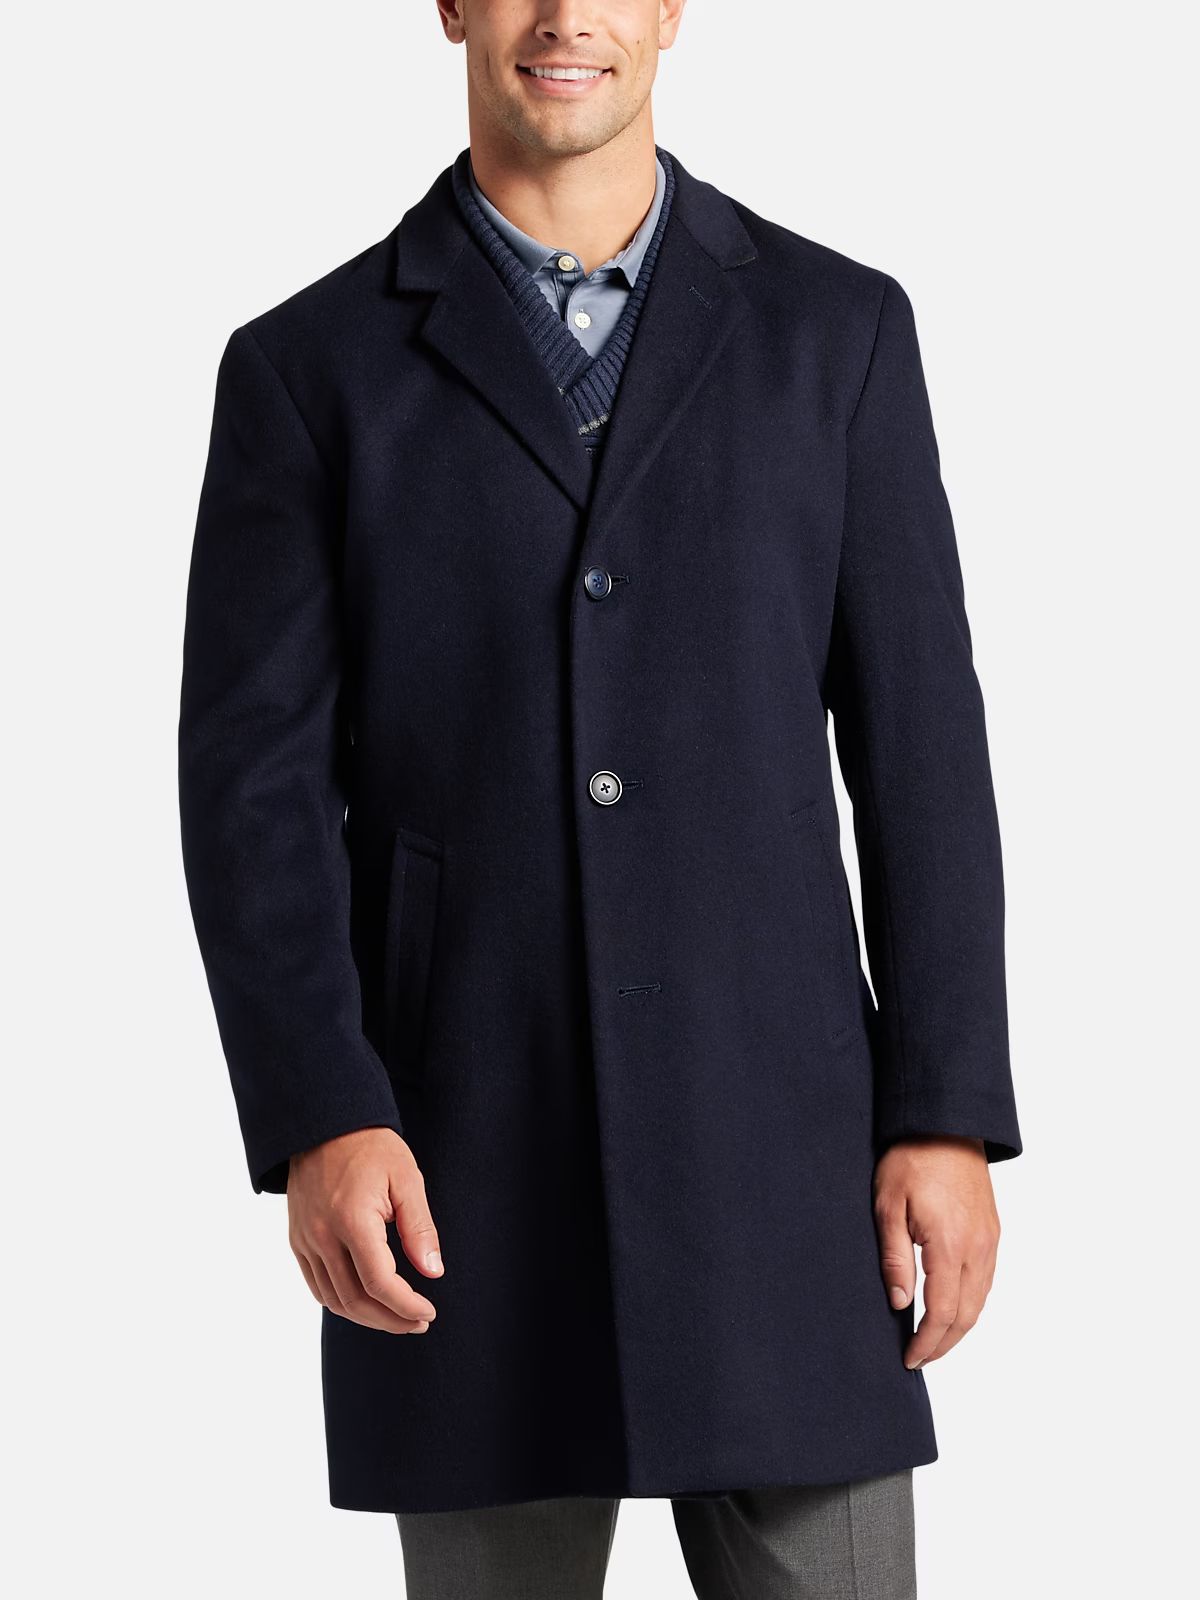 Joseph Abboud Modern Fit Overcoat | Outerwear| Men's Wearhouse | The Men's Wearhouse